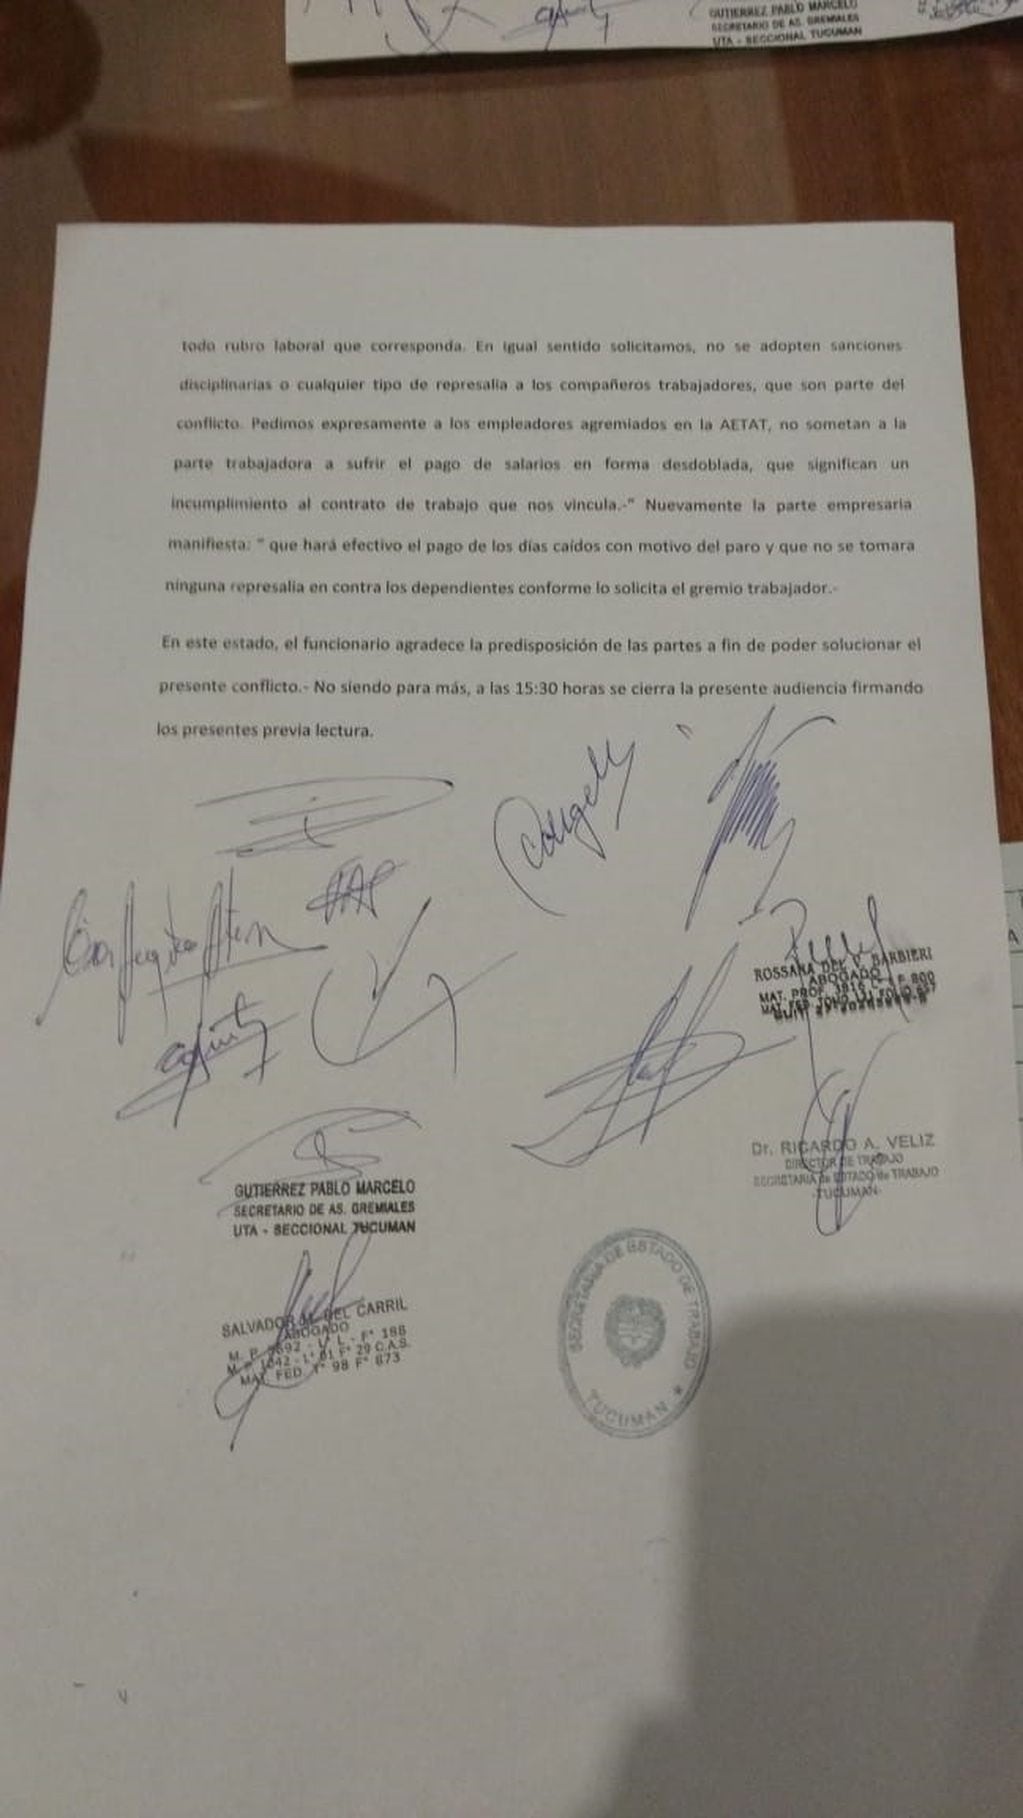 El acta firmada para destrabar el conflicto del transporte. (Vía Tucumán)